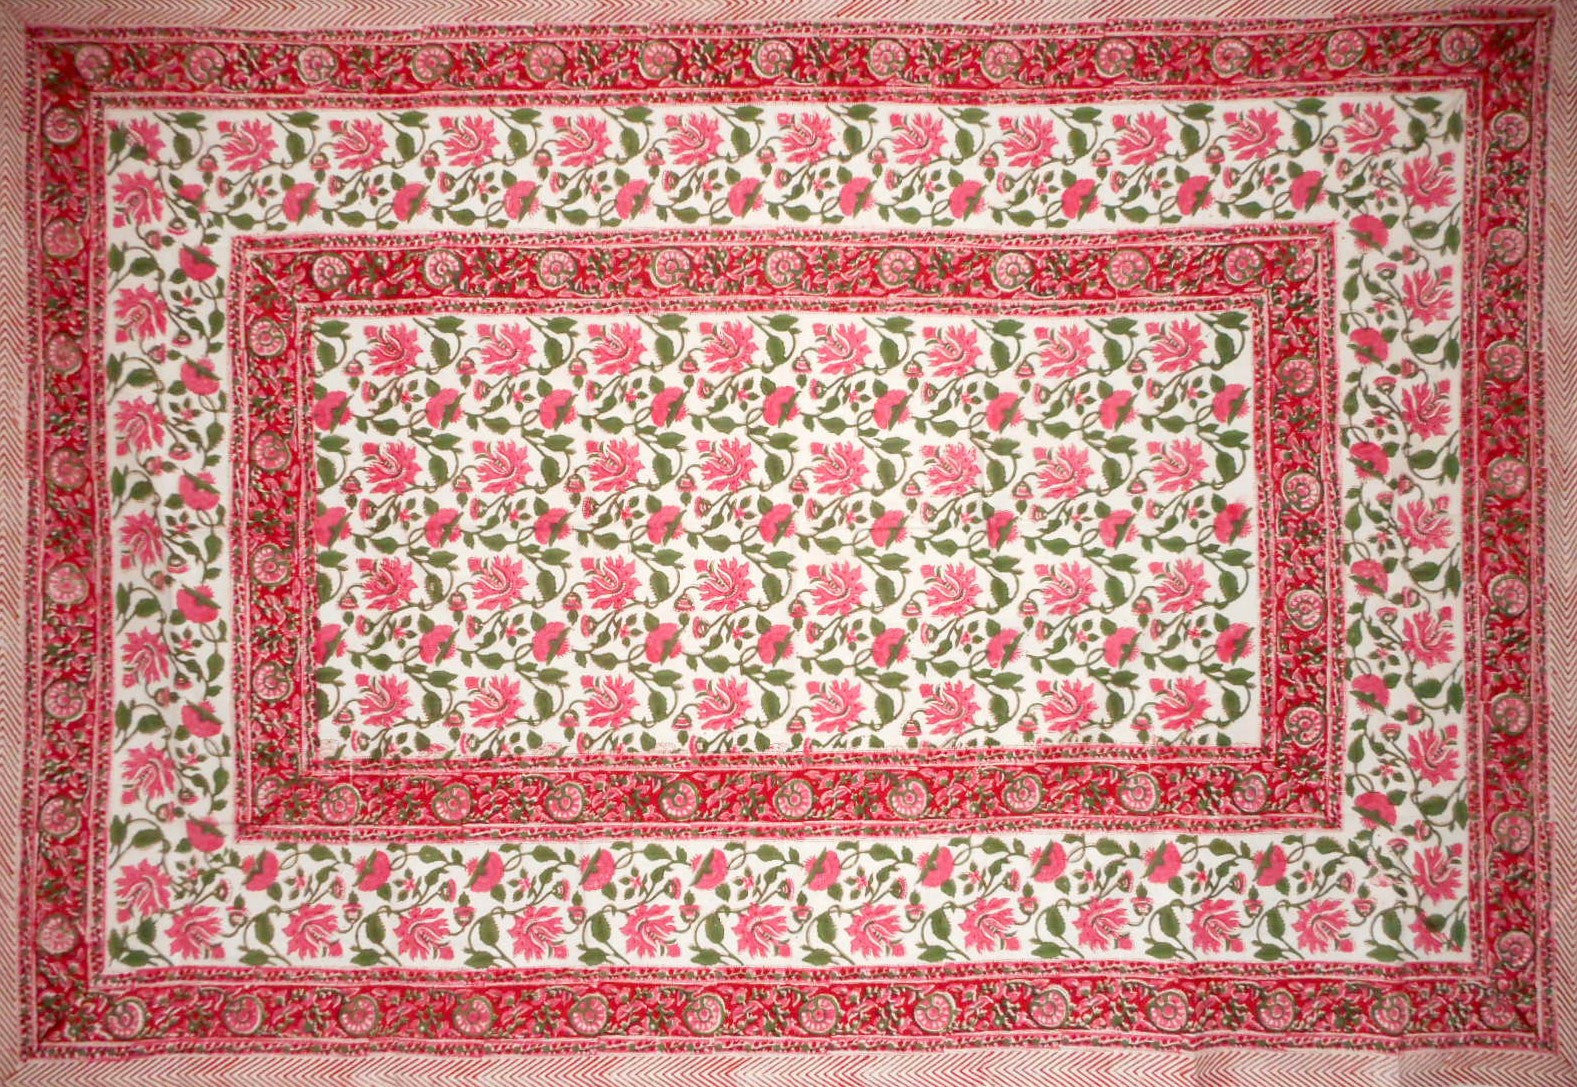 Pretty in Pink Blockdruck-Tischdecke aus Baumwolle, 228,6 x 152,4 cm, Rosa